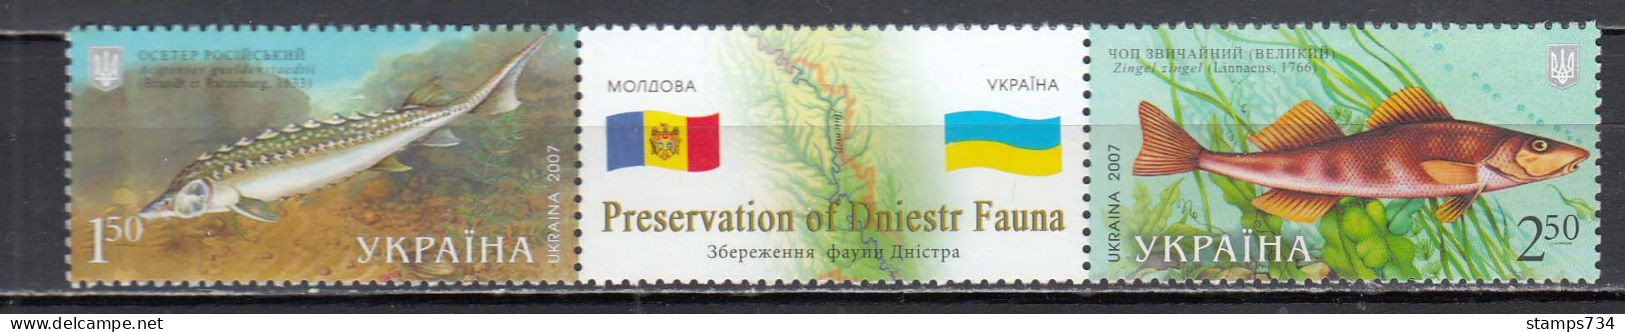 Ukraina 2007 - Fishes, Joint Issue With Moldova, Mi-Nr. 894/95, MNH** - Ukraine